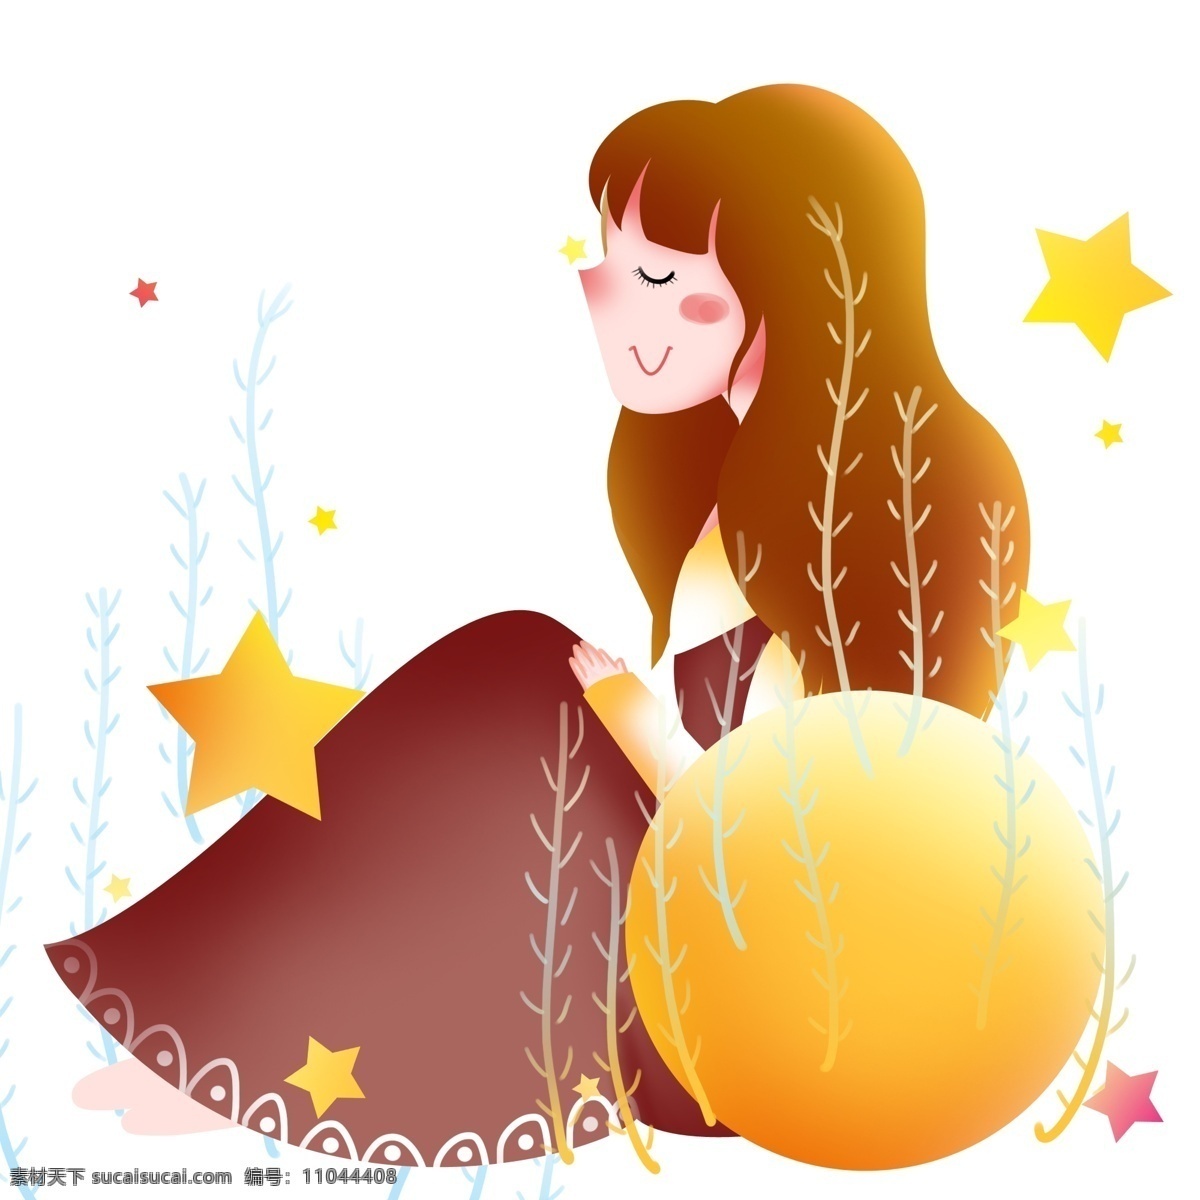 坐 睡觉 女孩 插画 世界 睡眠 日 睡觉的小女孩 黄色的圆球 黄色的星星 植物装饰 休息